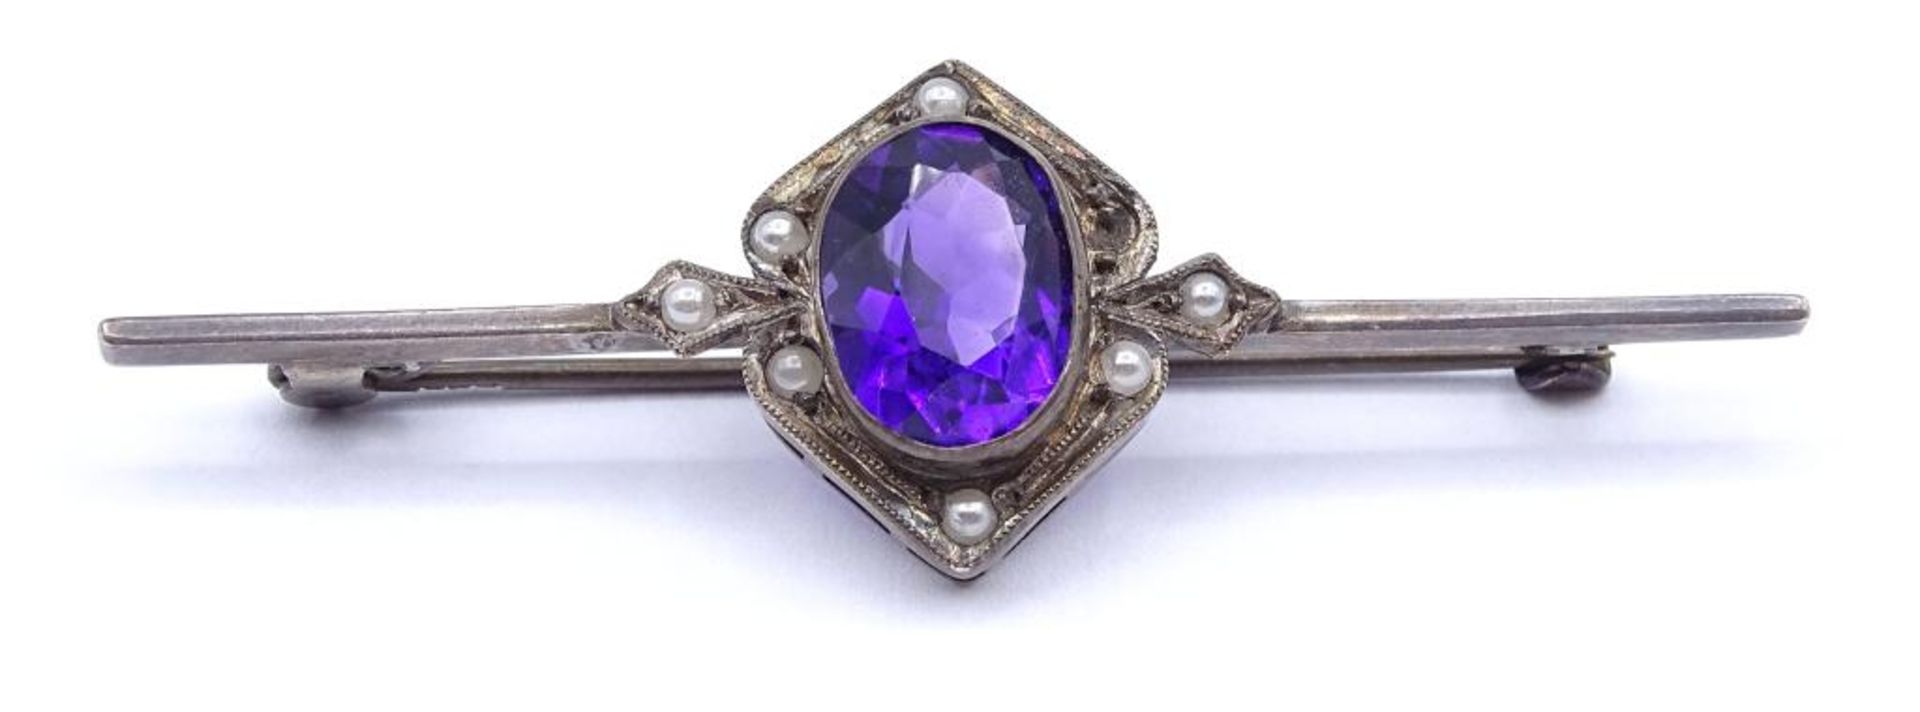 Alte Silber Brosche mit Perlchen und facettierten violetten Stein,1x Perle fehlt,Silber 835/000,L- - Image 3 of 5